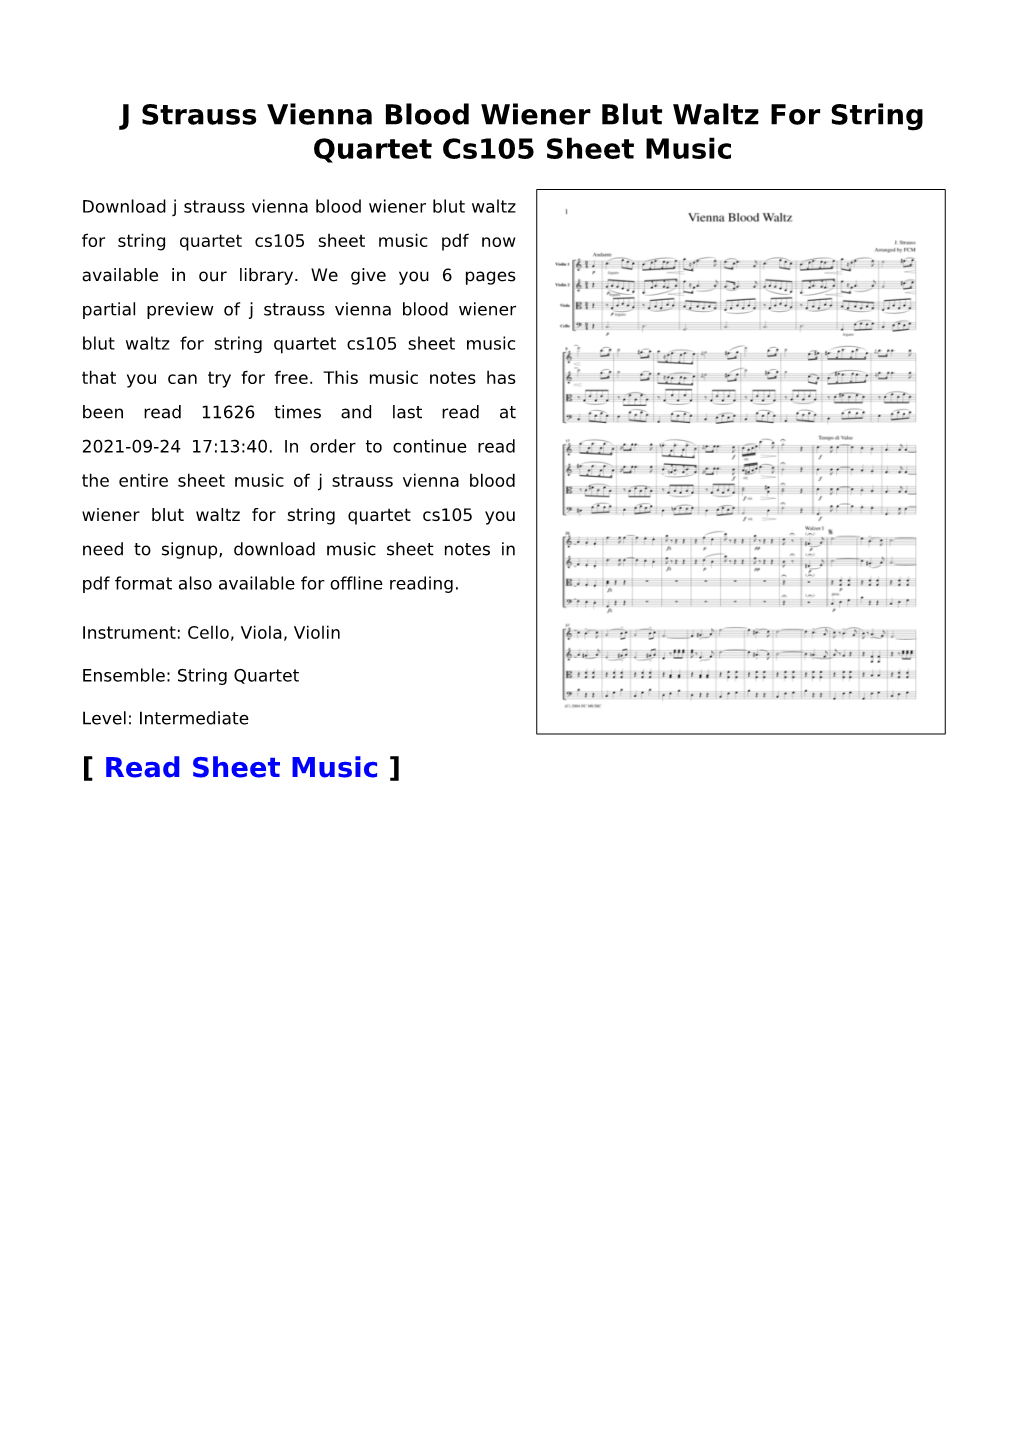 J Strauss Vienna Blood Wiener Blut Waltz for String Quartet Cs105 Sheet Music